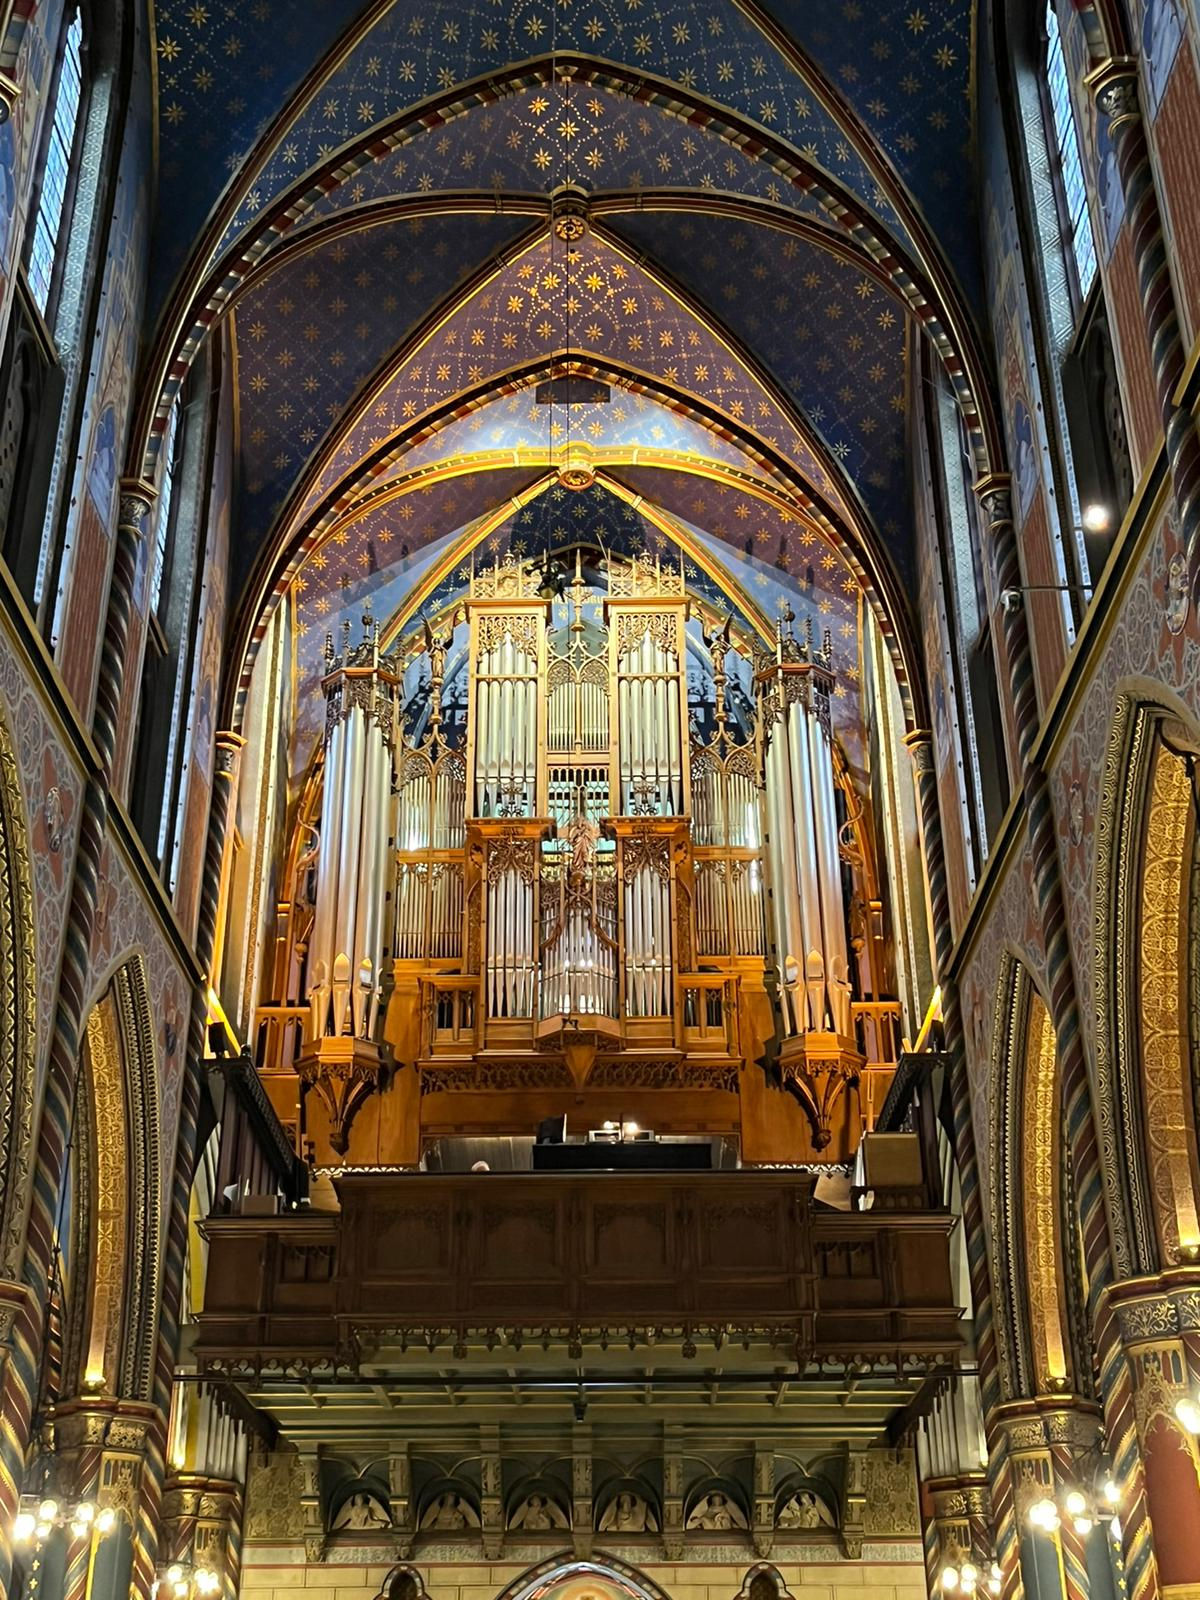 Orgel in de kerk in Kevelaer